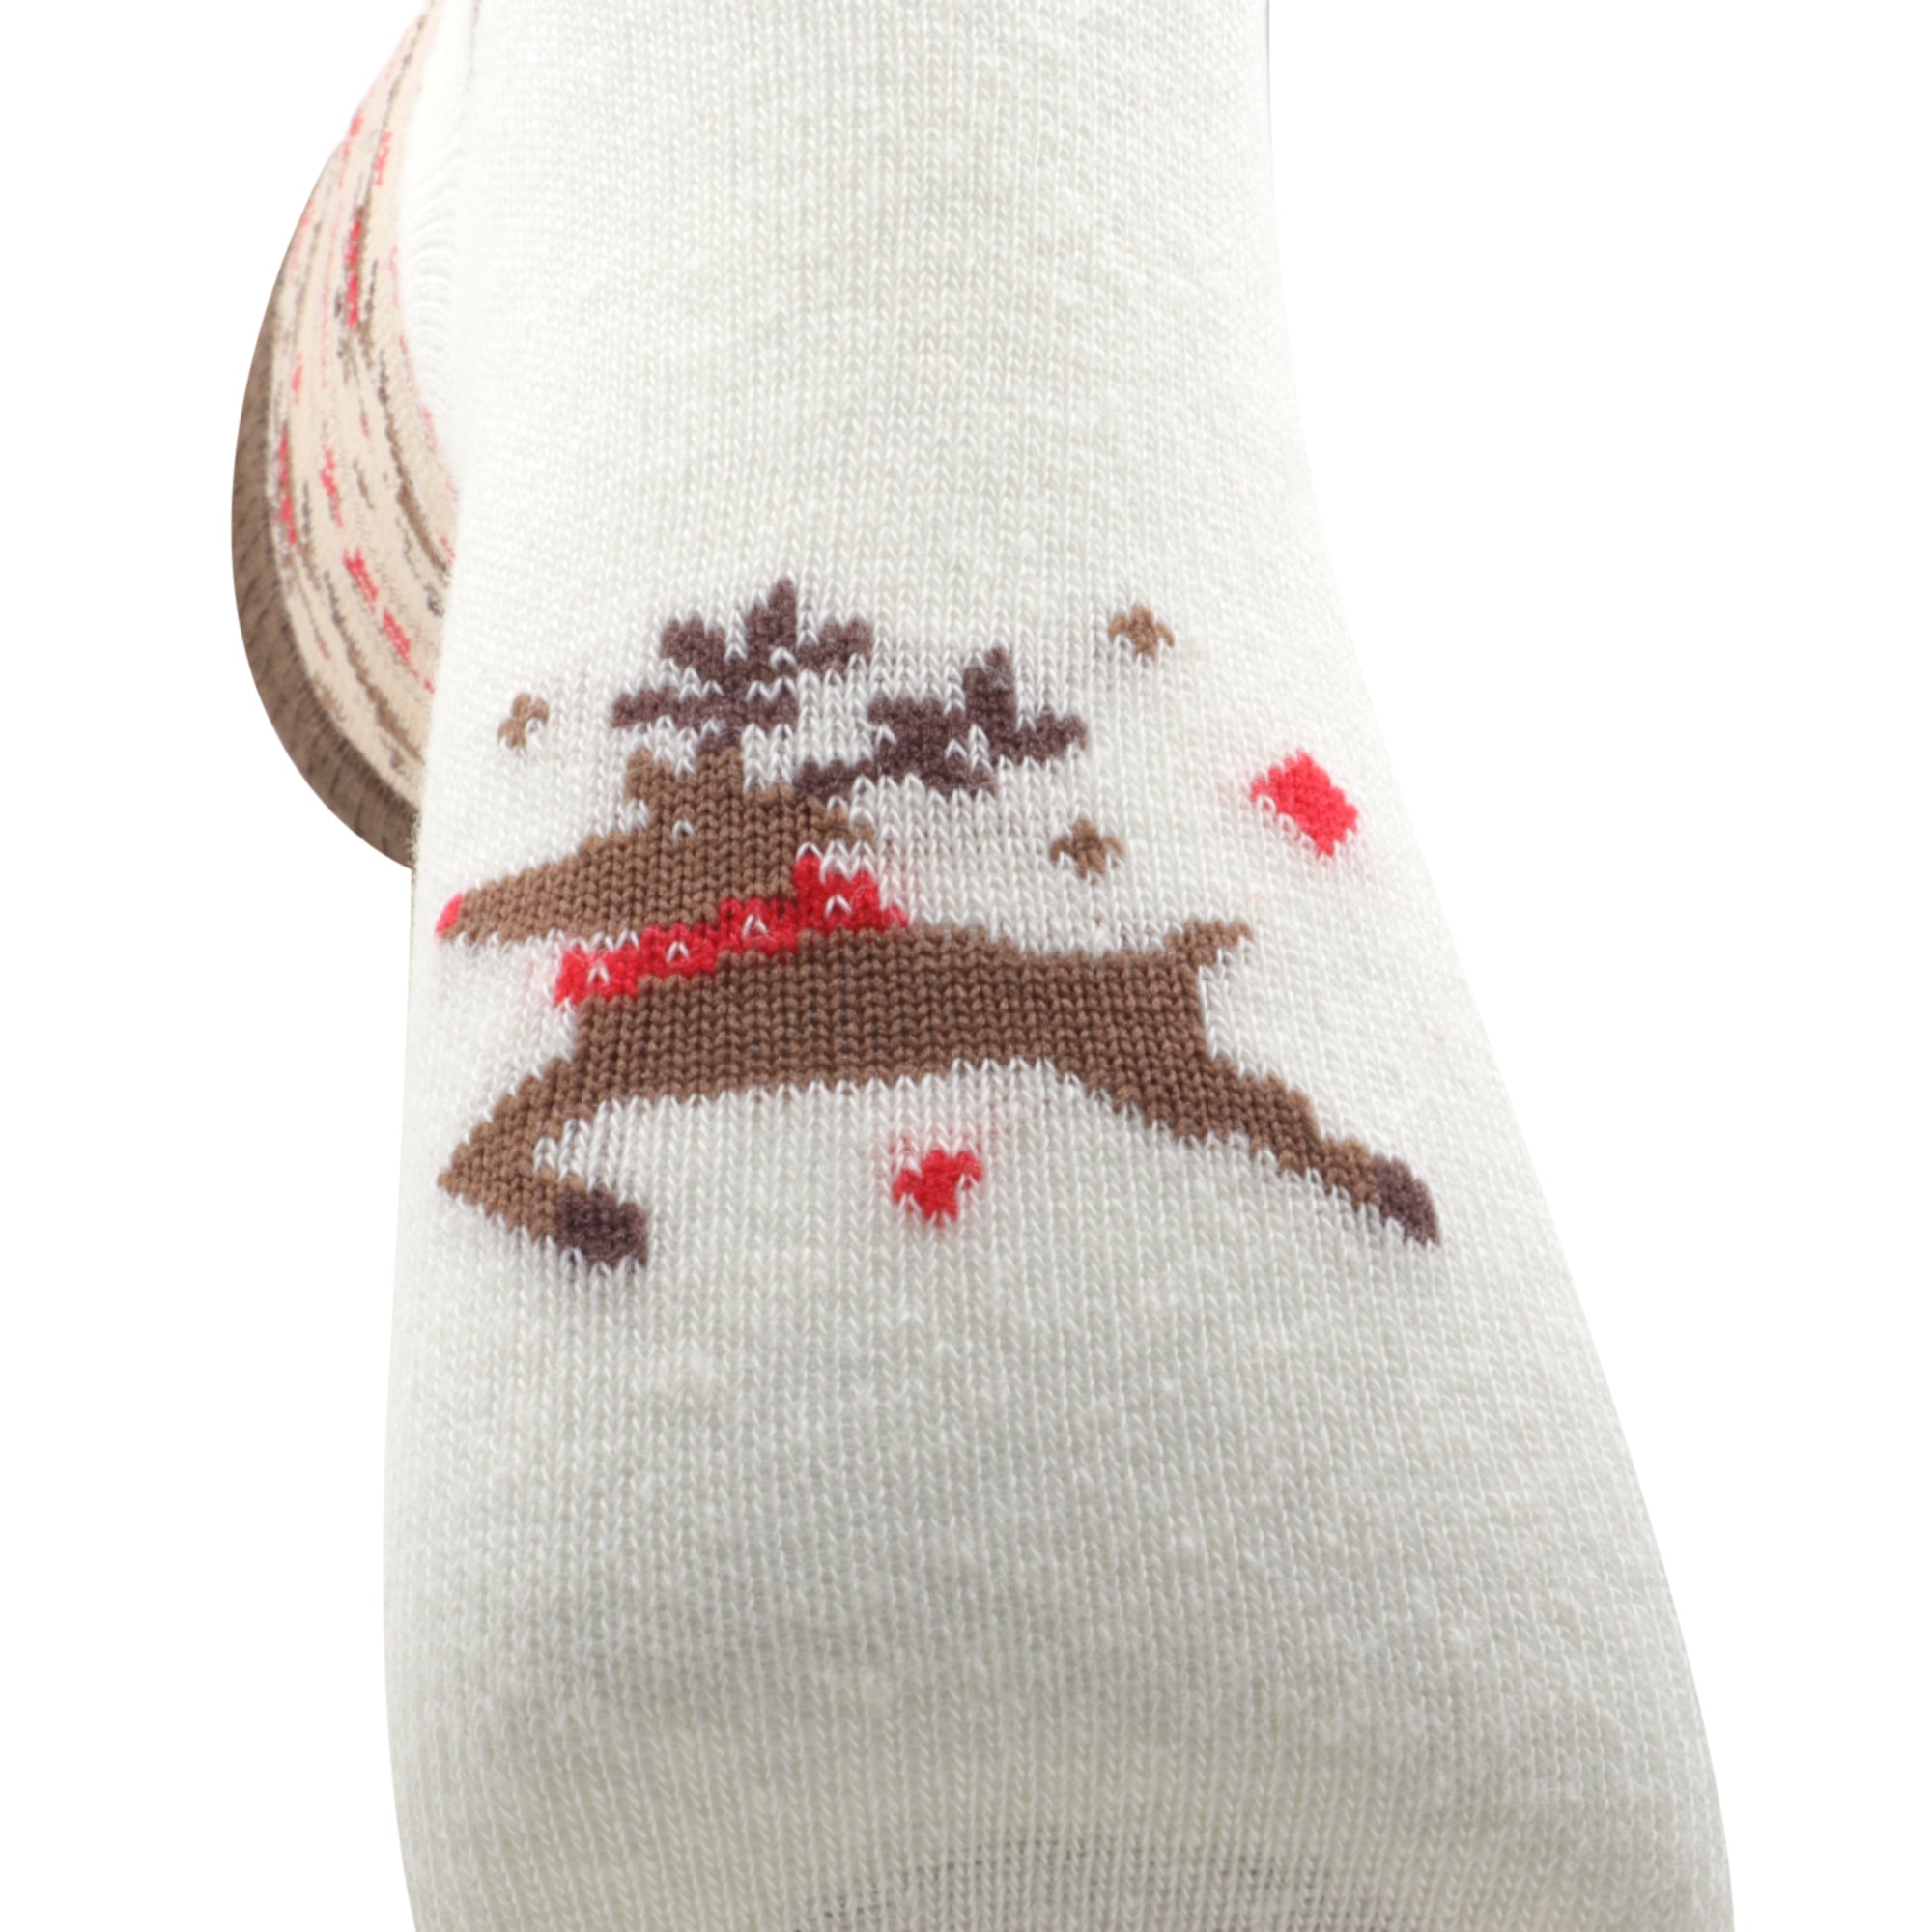 Louluu Colourful Cream Christmas Socks